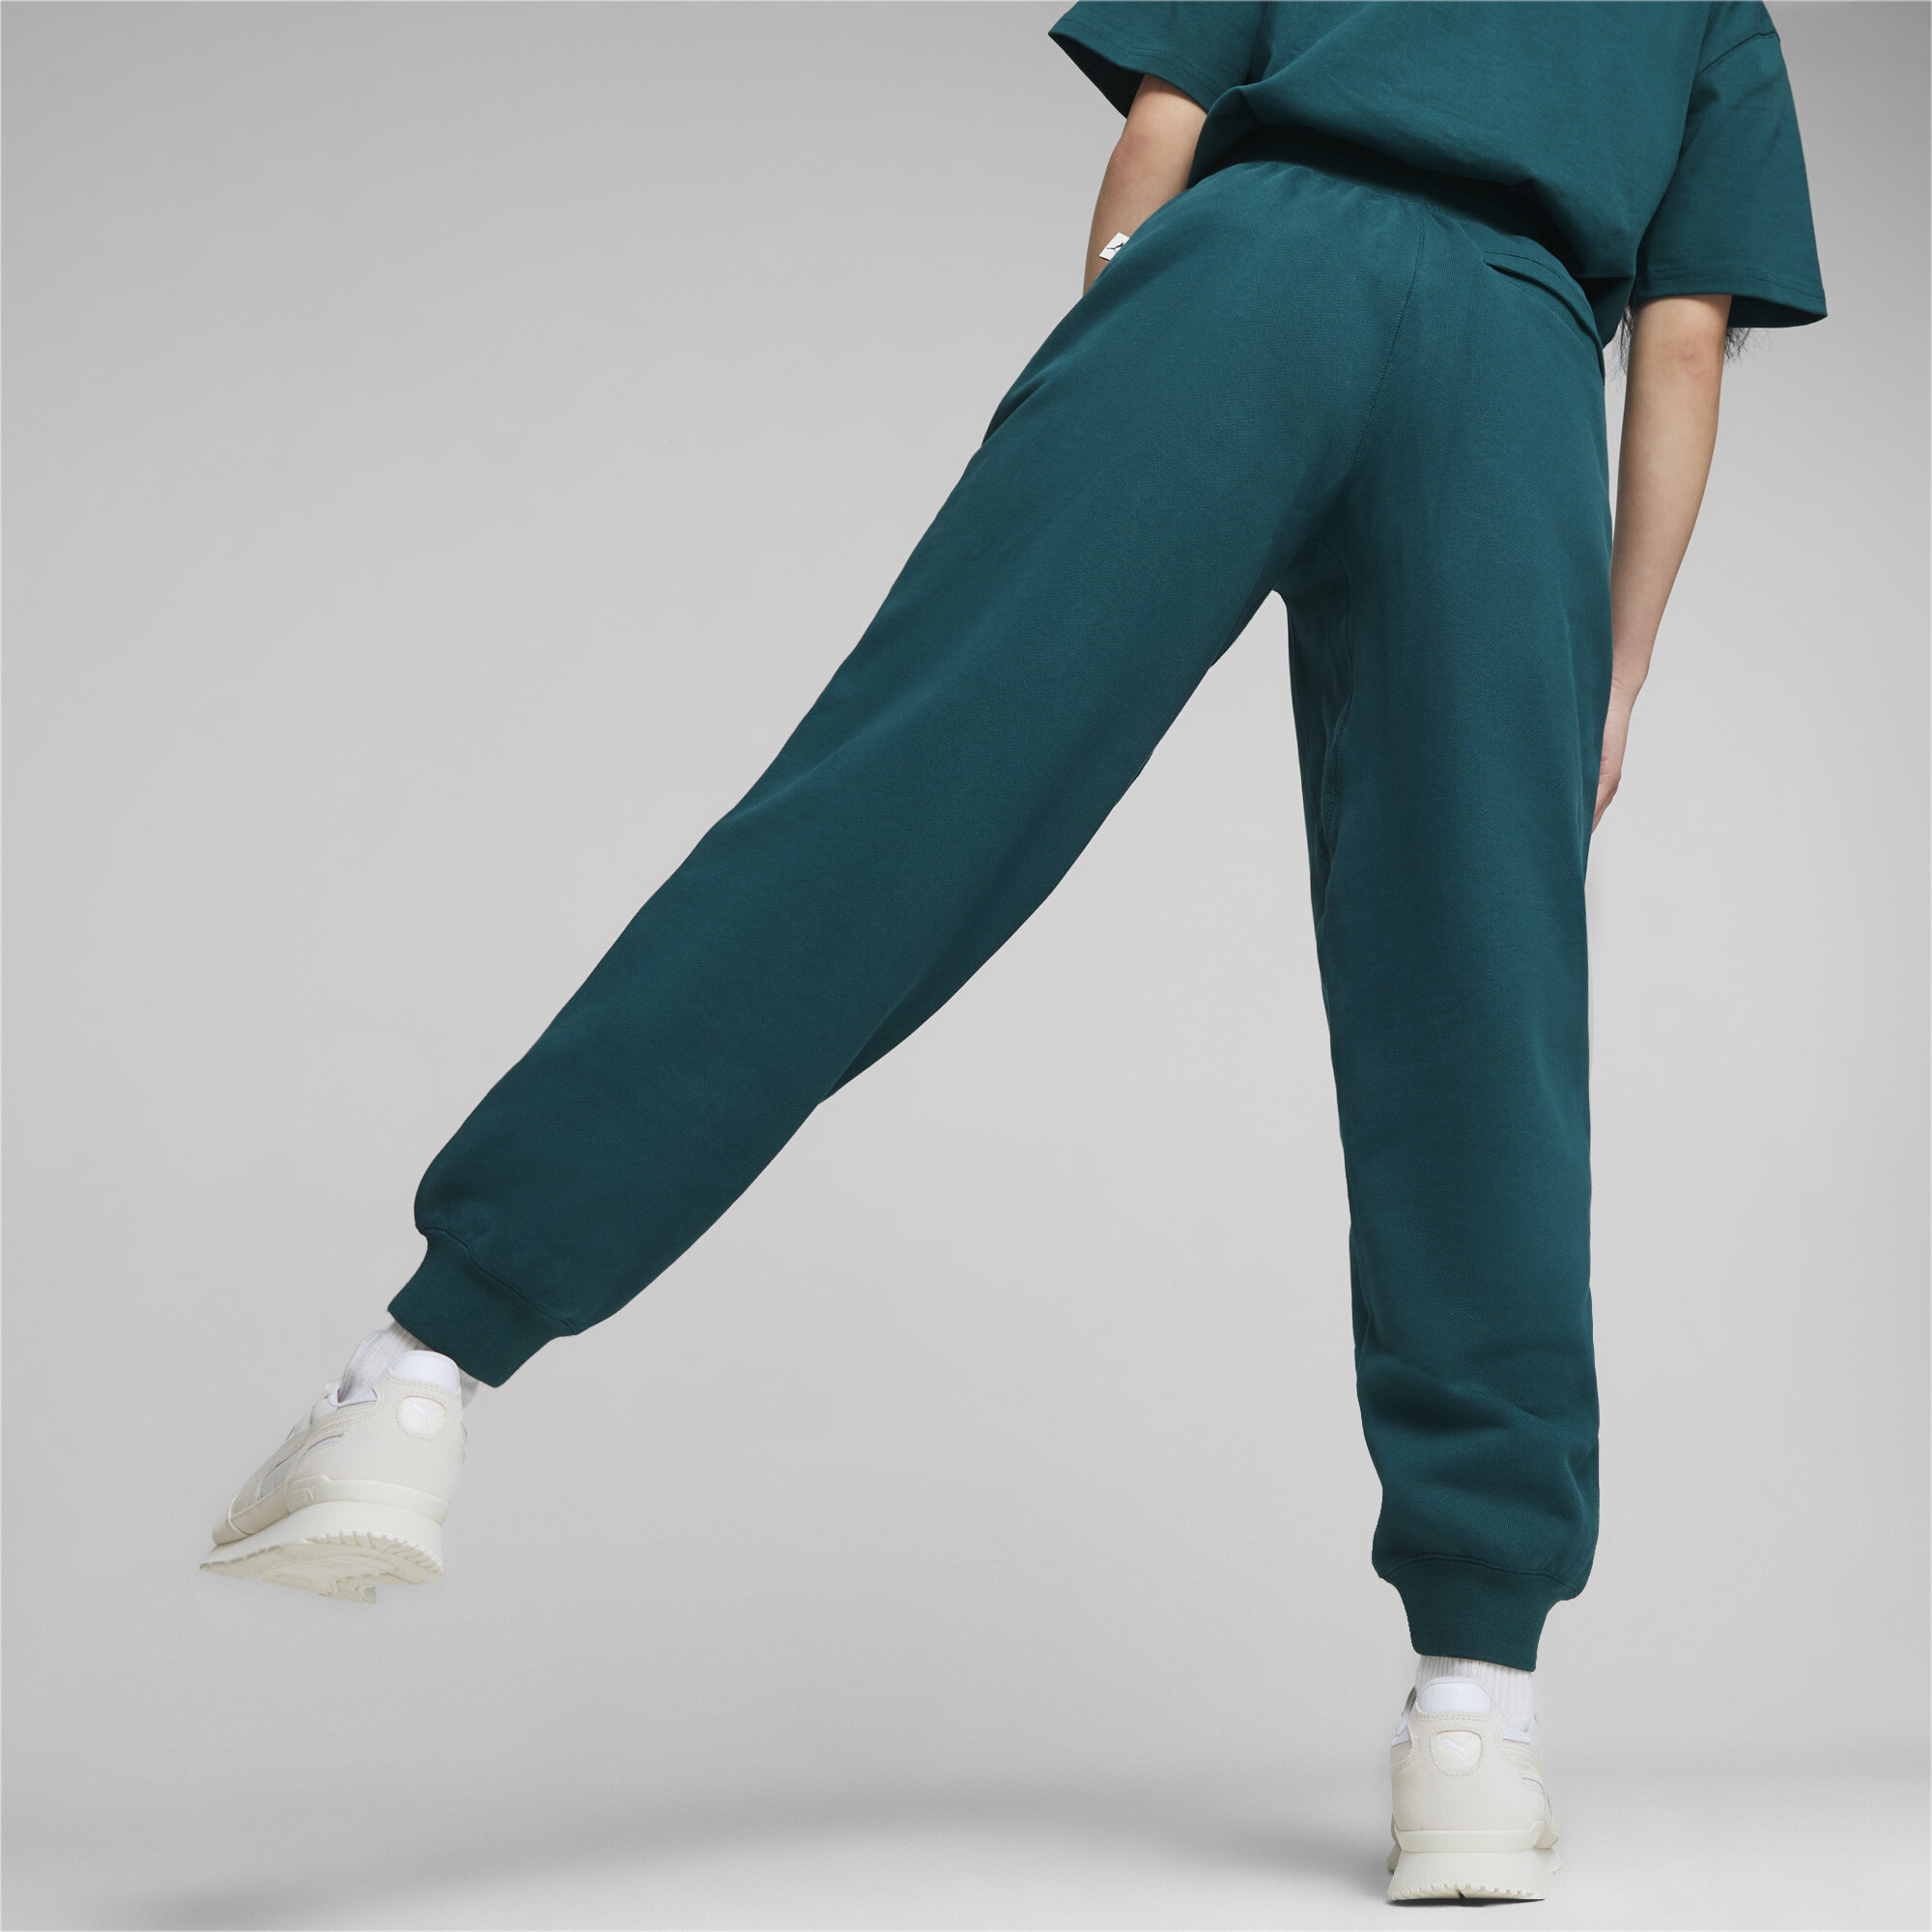 Men's PUMA MMQ Sweatpants In Green, Size XL